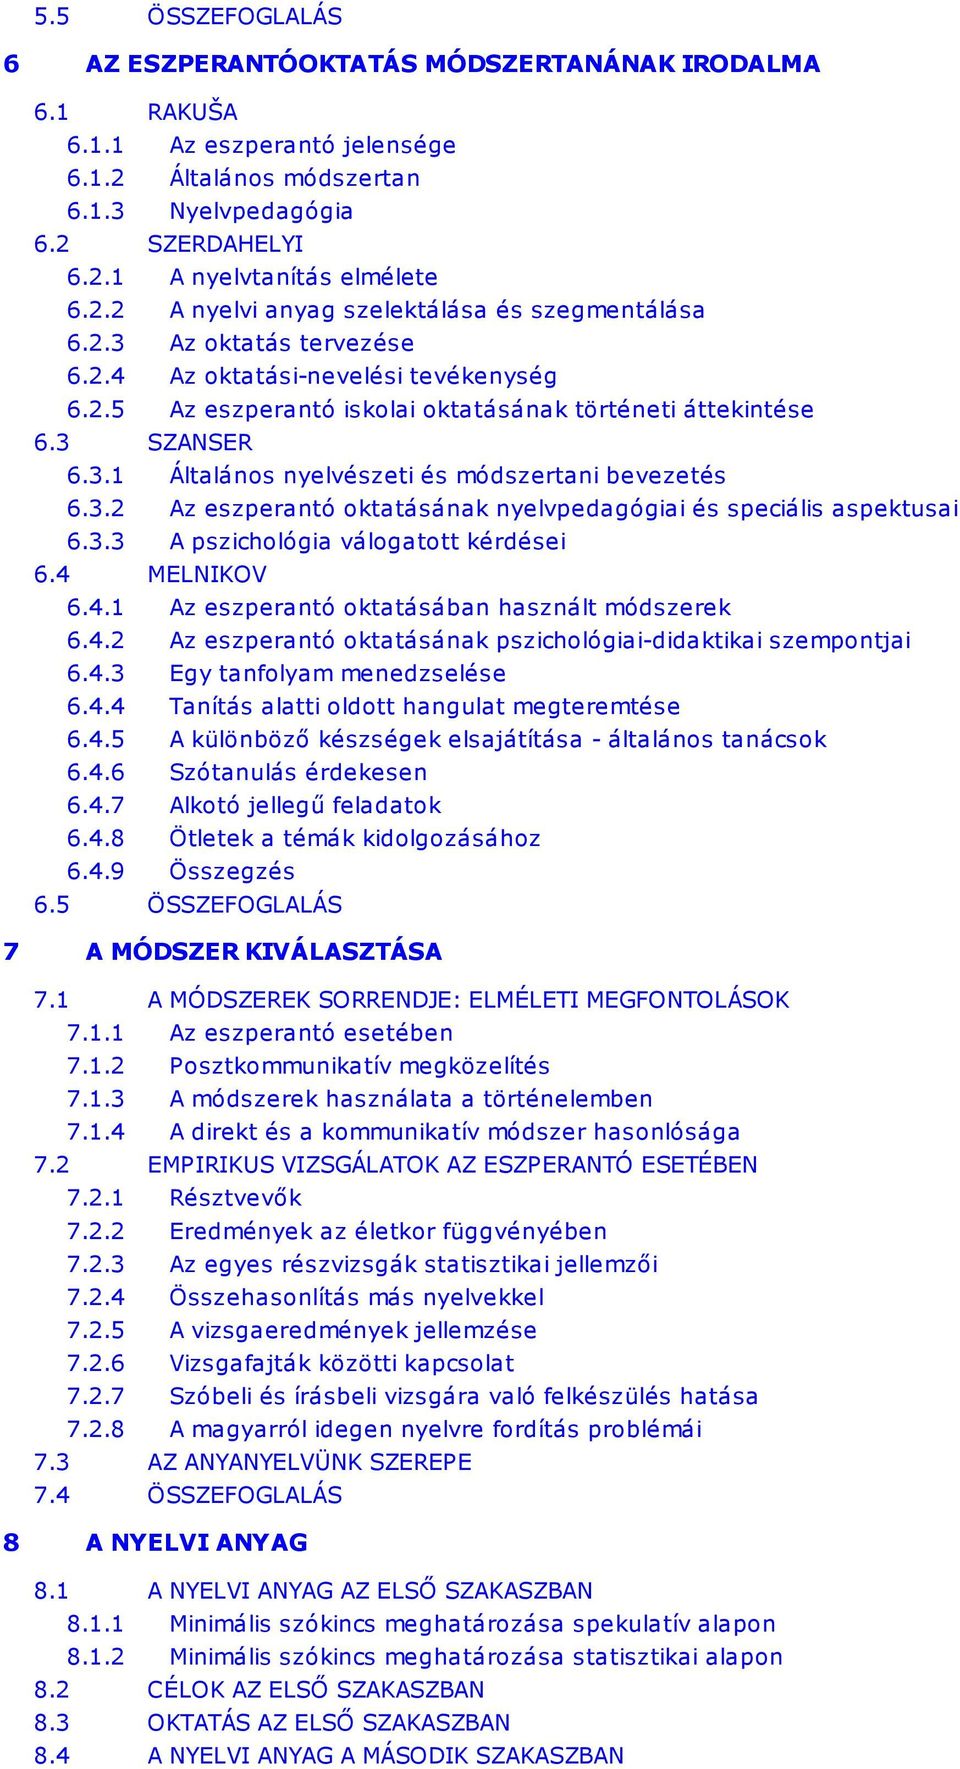 3.2 Az eszperantó oktatásának nyelvpedagógiai és speciális aspektusai 6.3.3 A pszichológia válogatott kérdései 6.4 MELNIKOV 6.4.1 Az eszperantó oktatásában használt módszerek 6.4.2 Az eszperantó oktatásának pszichológiai-didaktikai szempontjai 6.